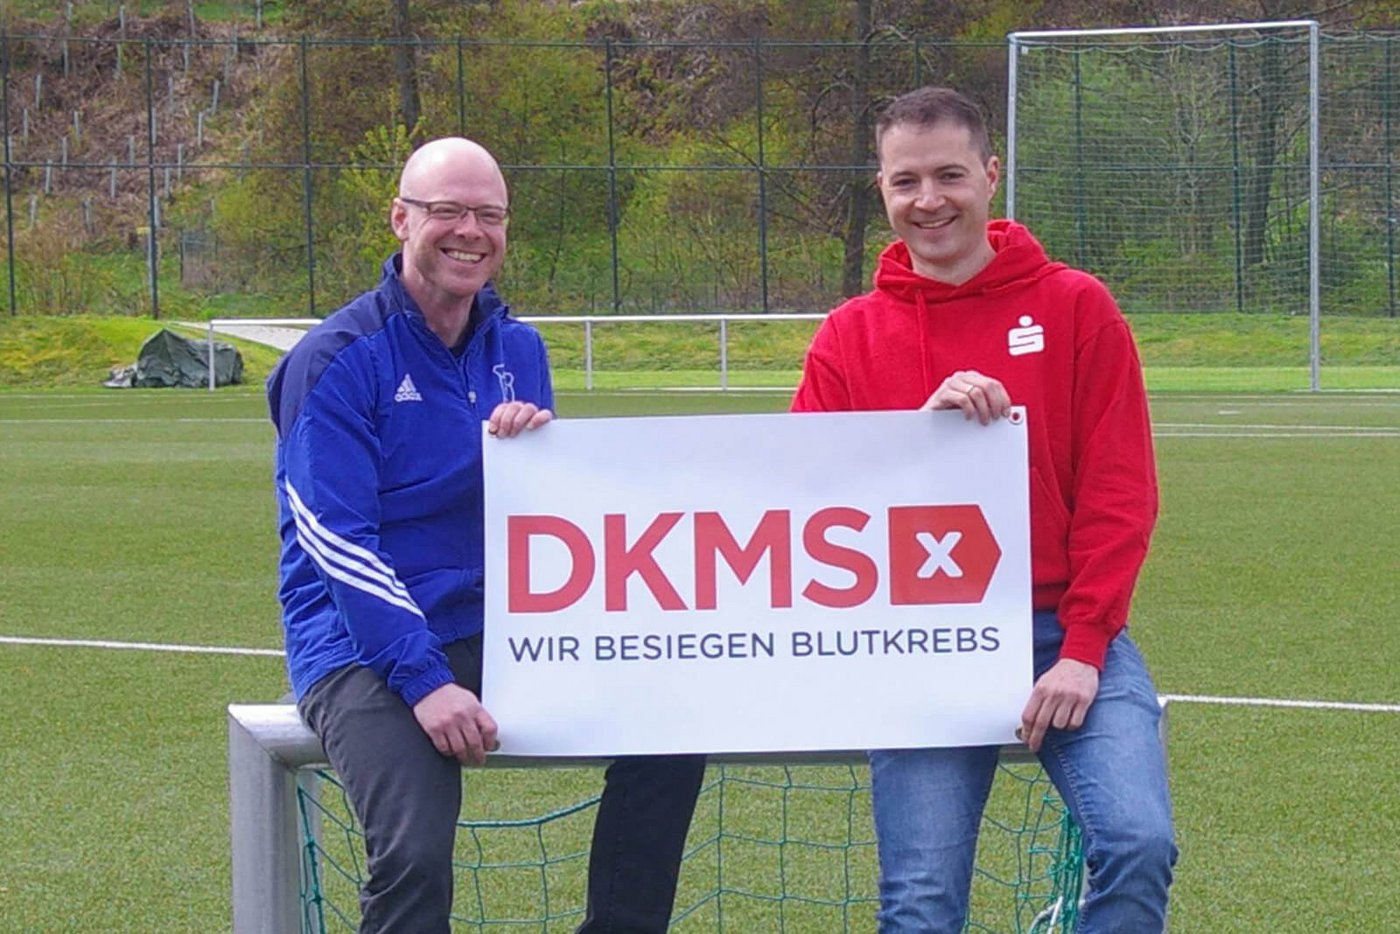 Volker Biock und Dominik Thoenes freuen sich darüber, gemeinsam gegen Blutkrebs kämpfen zu dürfen